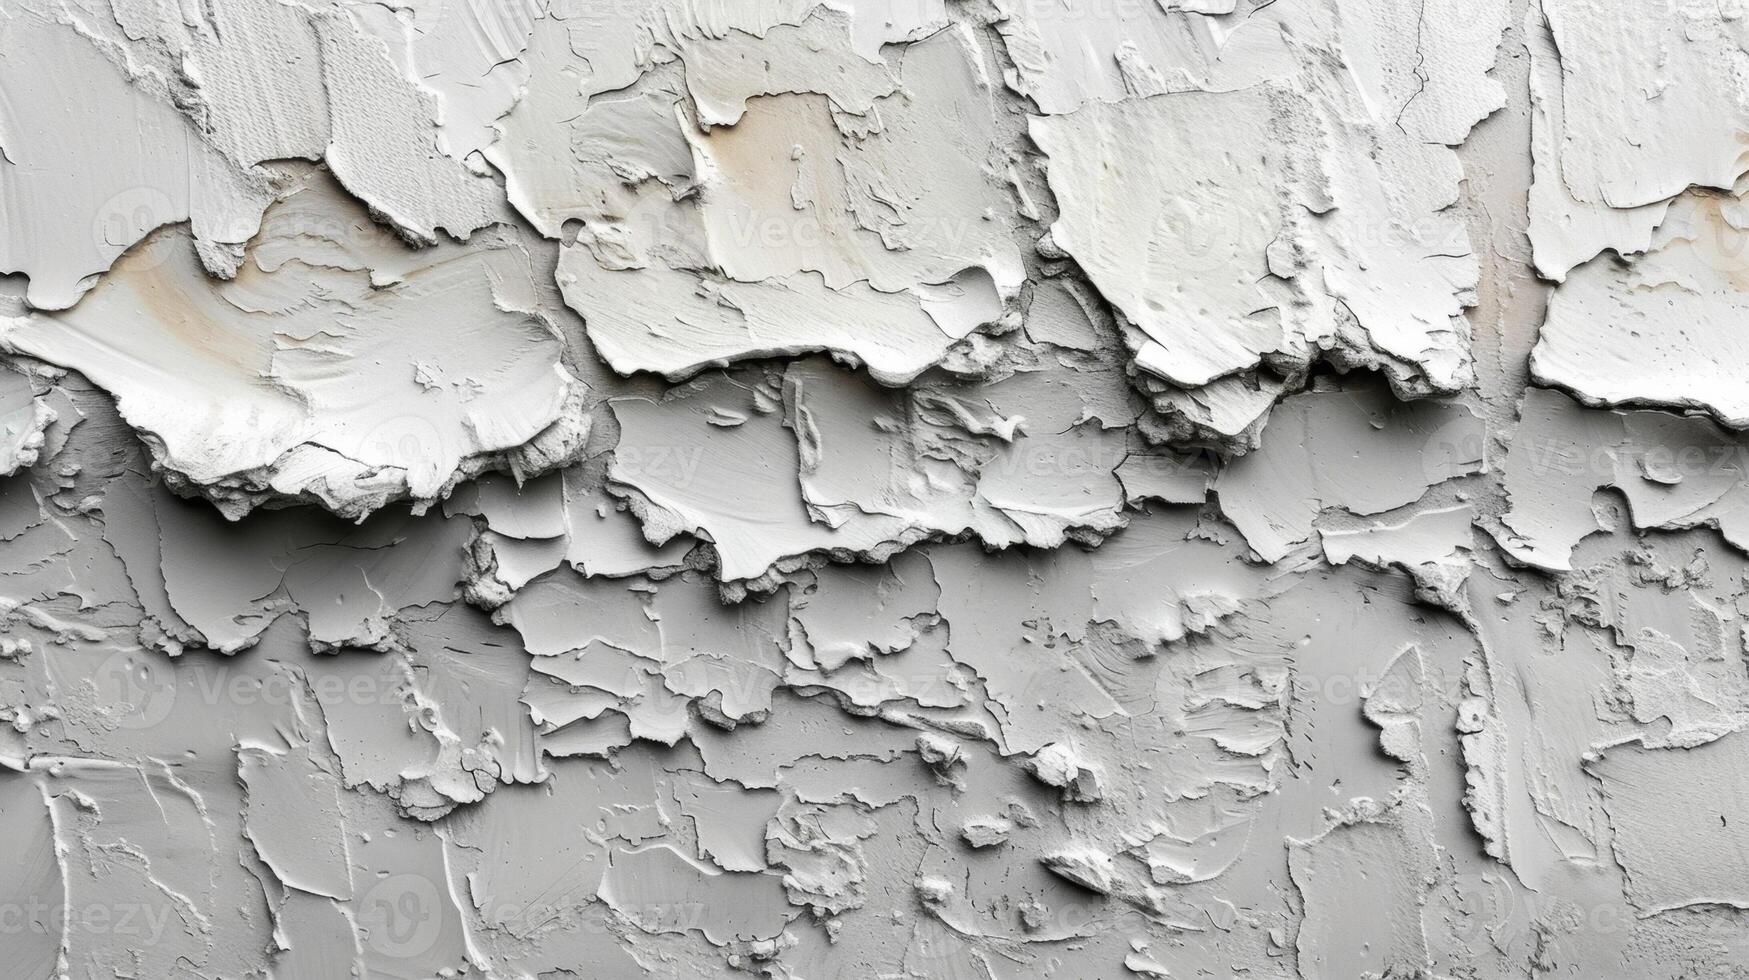 en detaljerad skott av en texturerad plåster vägg i en ljus grå nyans skapande en subtil och elegant bakgrund för några rum foto